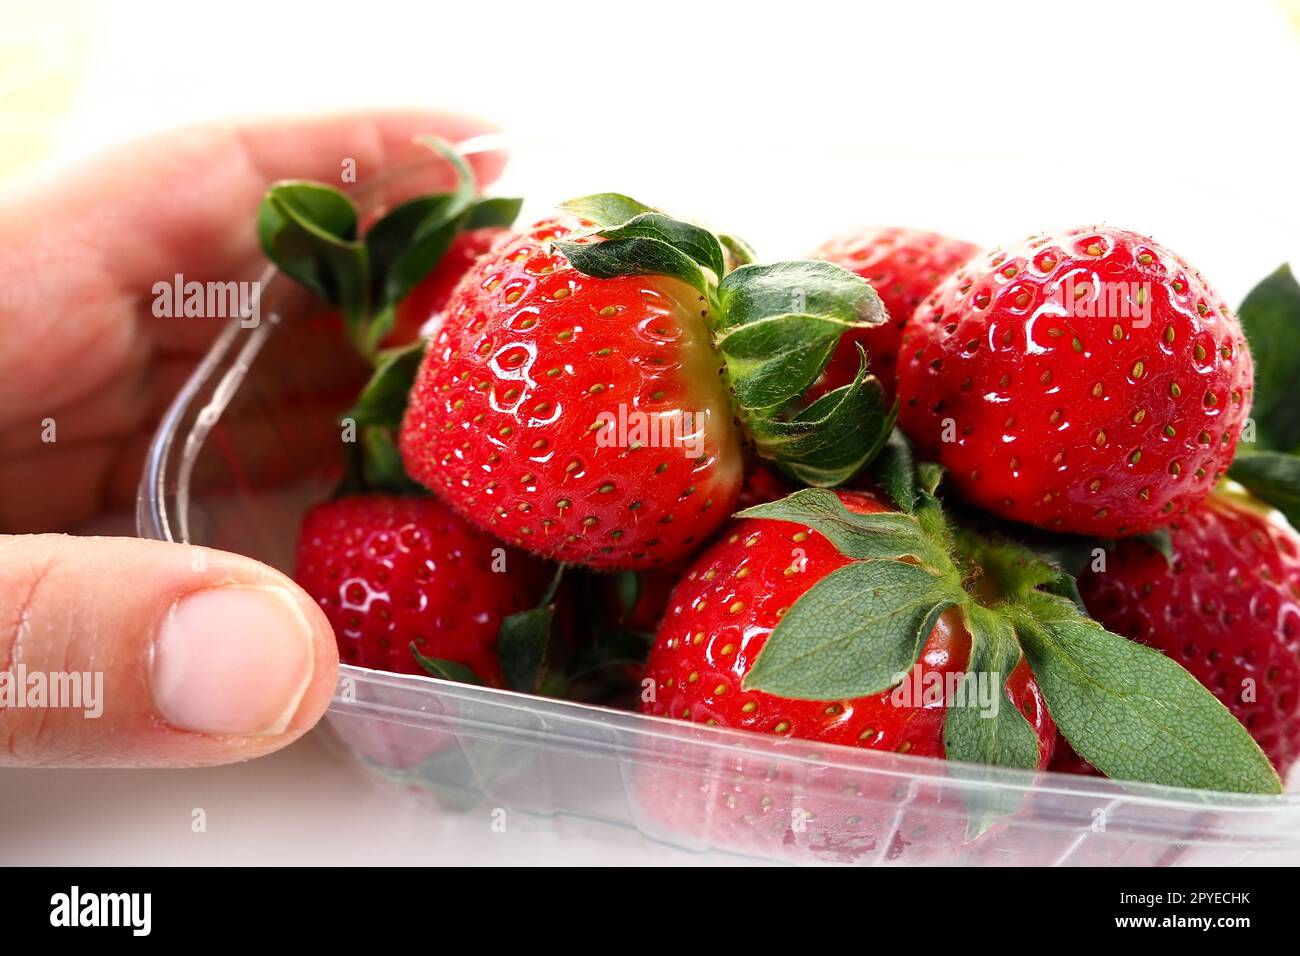 Reife Erdbeeren in einer Kunststoffverpackung auf weißem Hintergrund. Köstliche frische Beeren in einem Behälter zum Verkauf an Kunden. Lebensmittel frisch halten. Gesundes Essen. Frauenhand mit Erdbeeren. Stockfoto